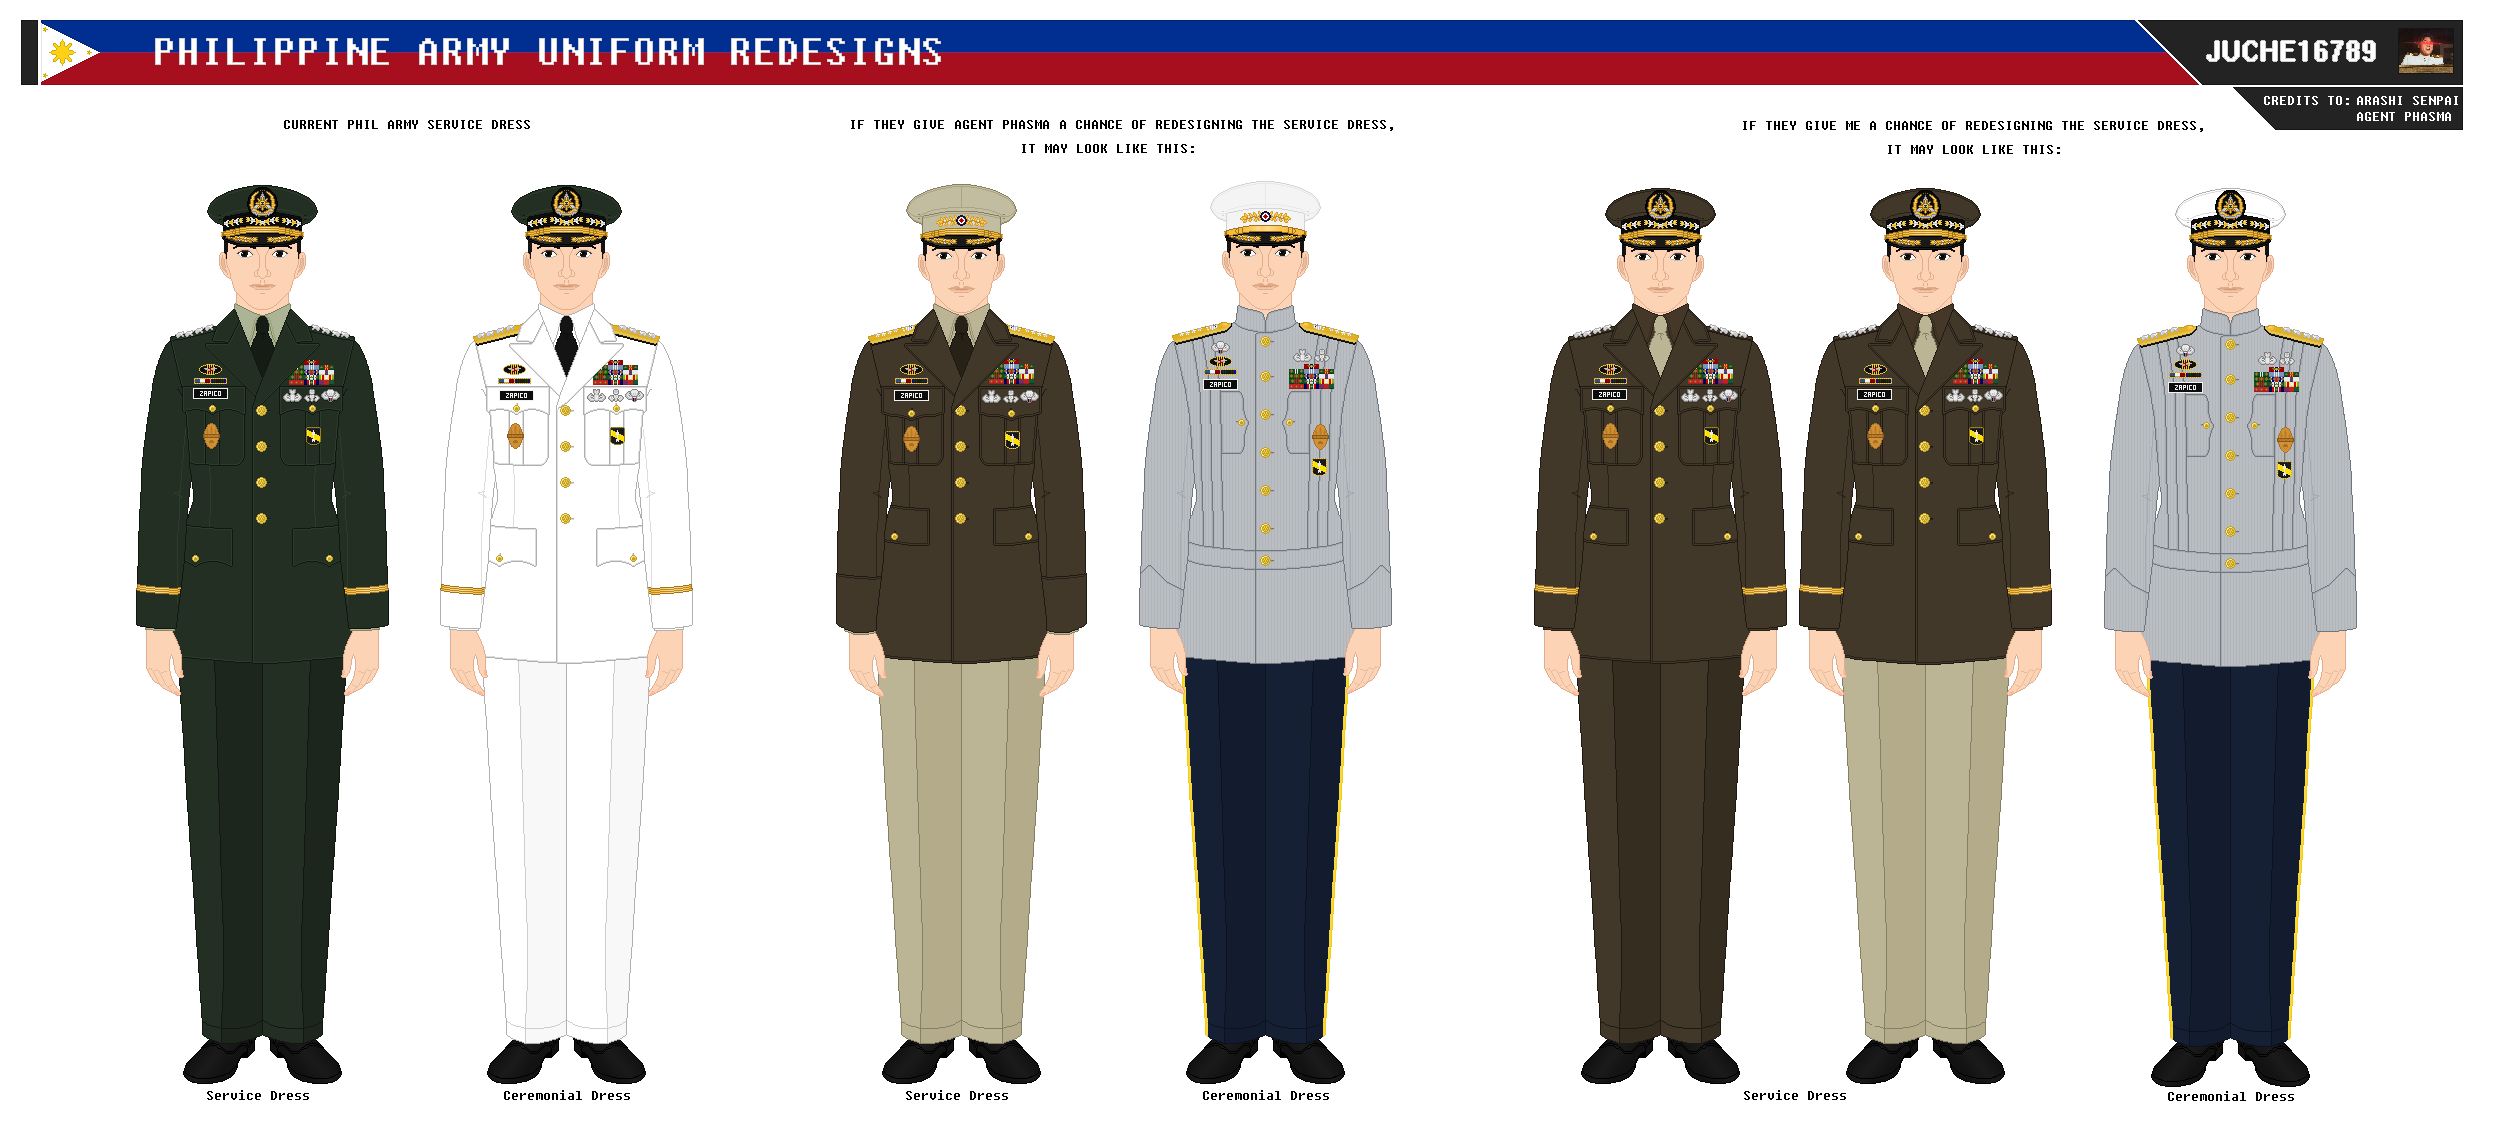 Philippine Army Uniform Redesigns by Juche16789 on DeviantArt